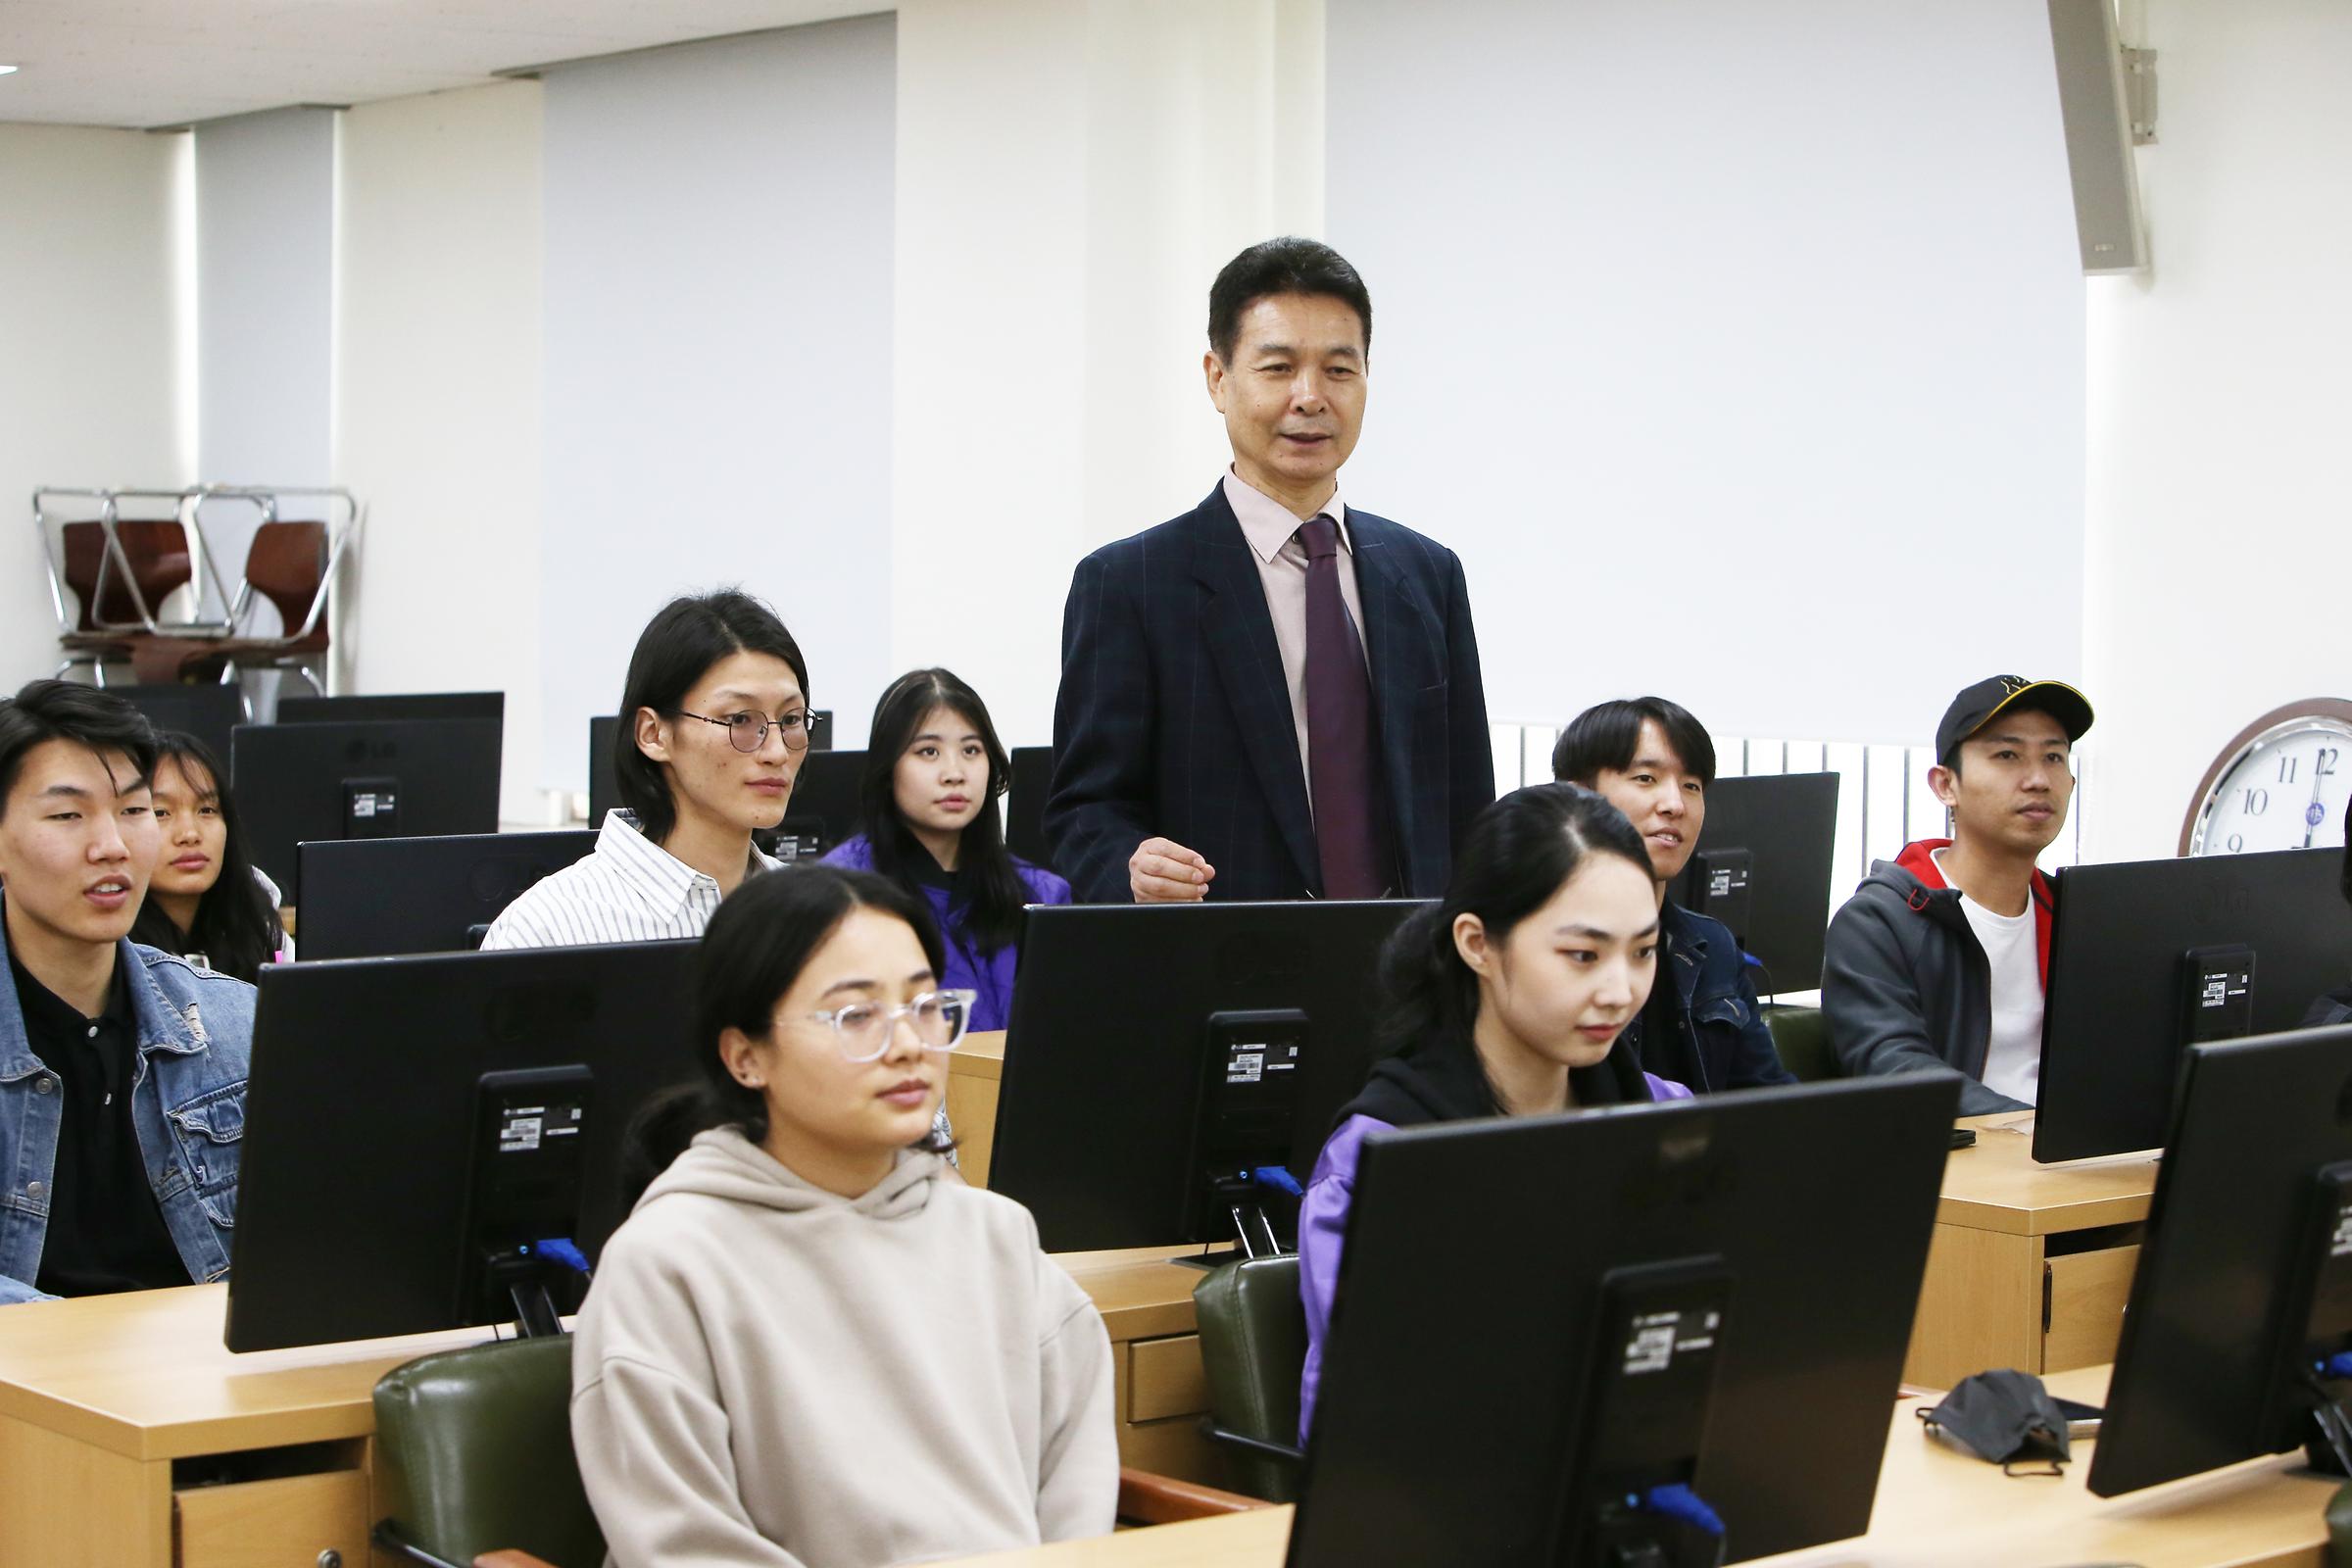 컴퓨터 실에서 수업을 듣는 학생들의 사진. 두 줄의 책상 사이에 교수님이 서있다.